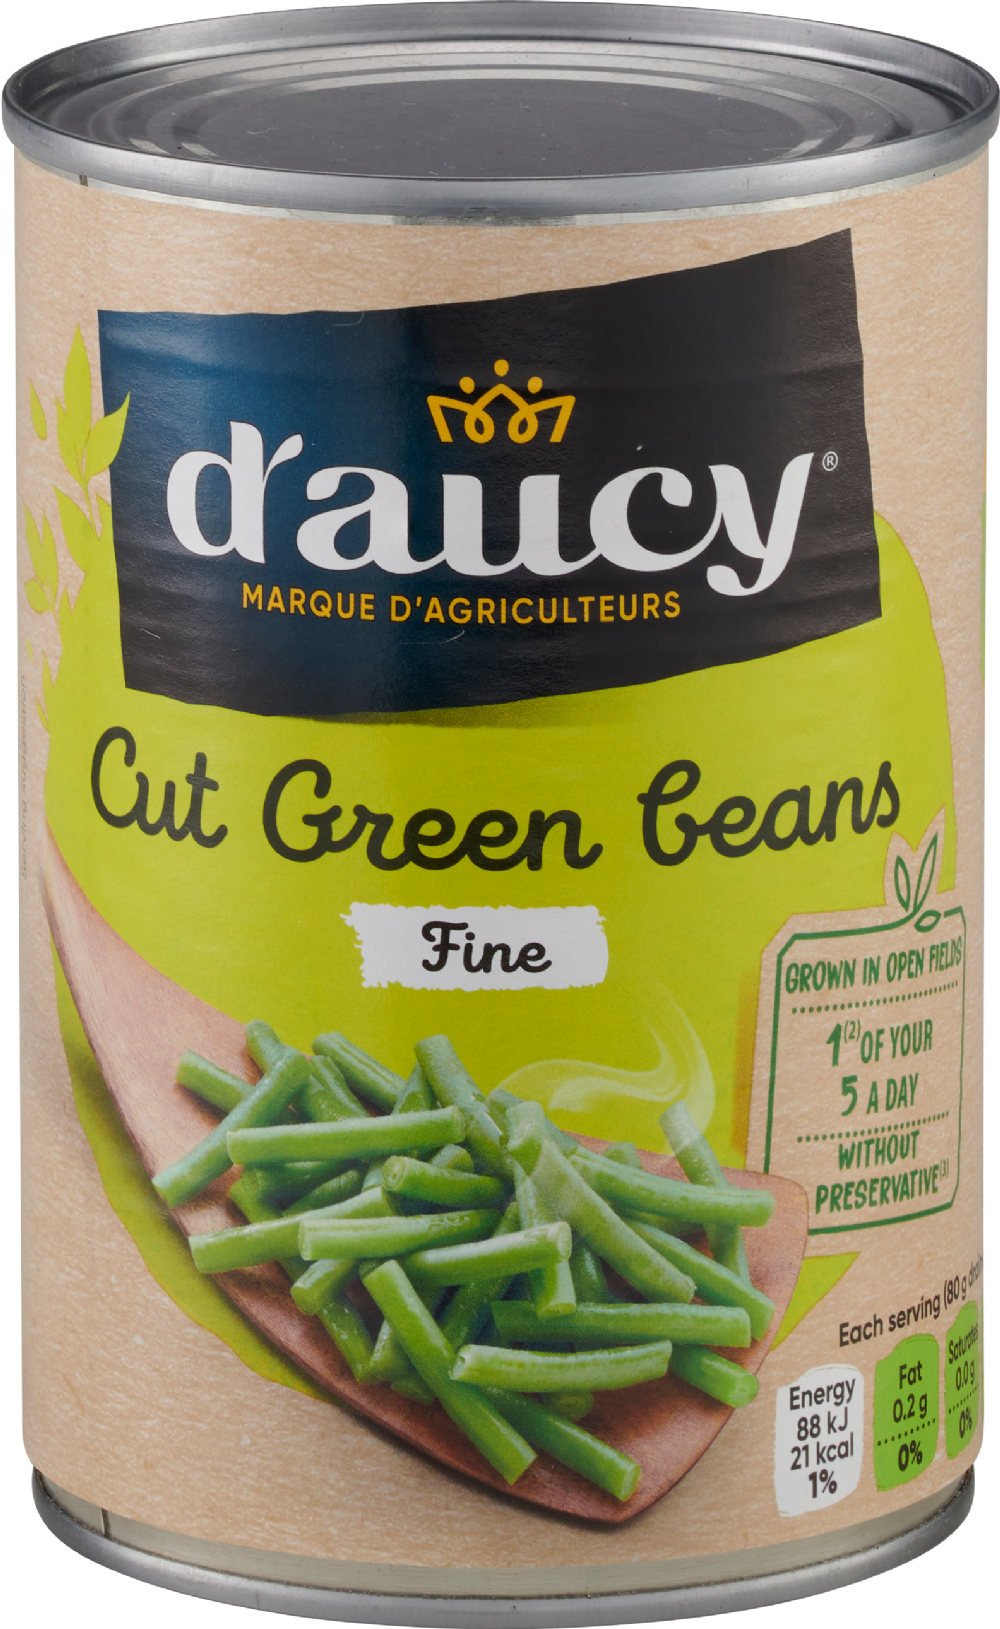 D'AUCY Cut Green Beans - Fine 400g